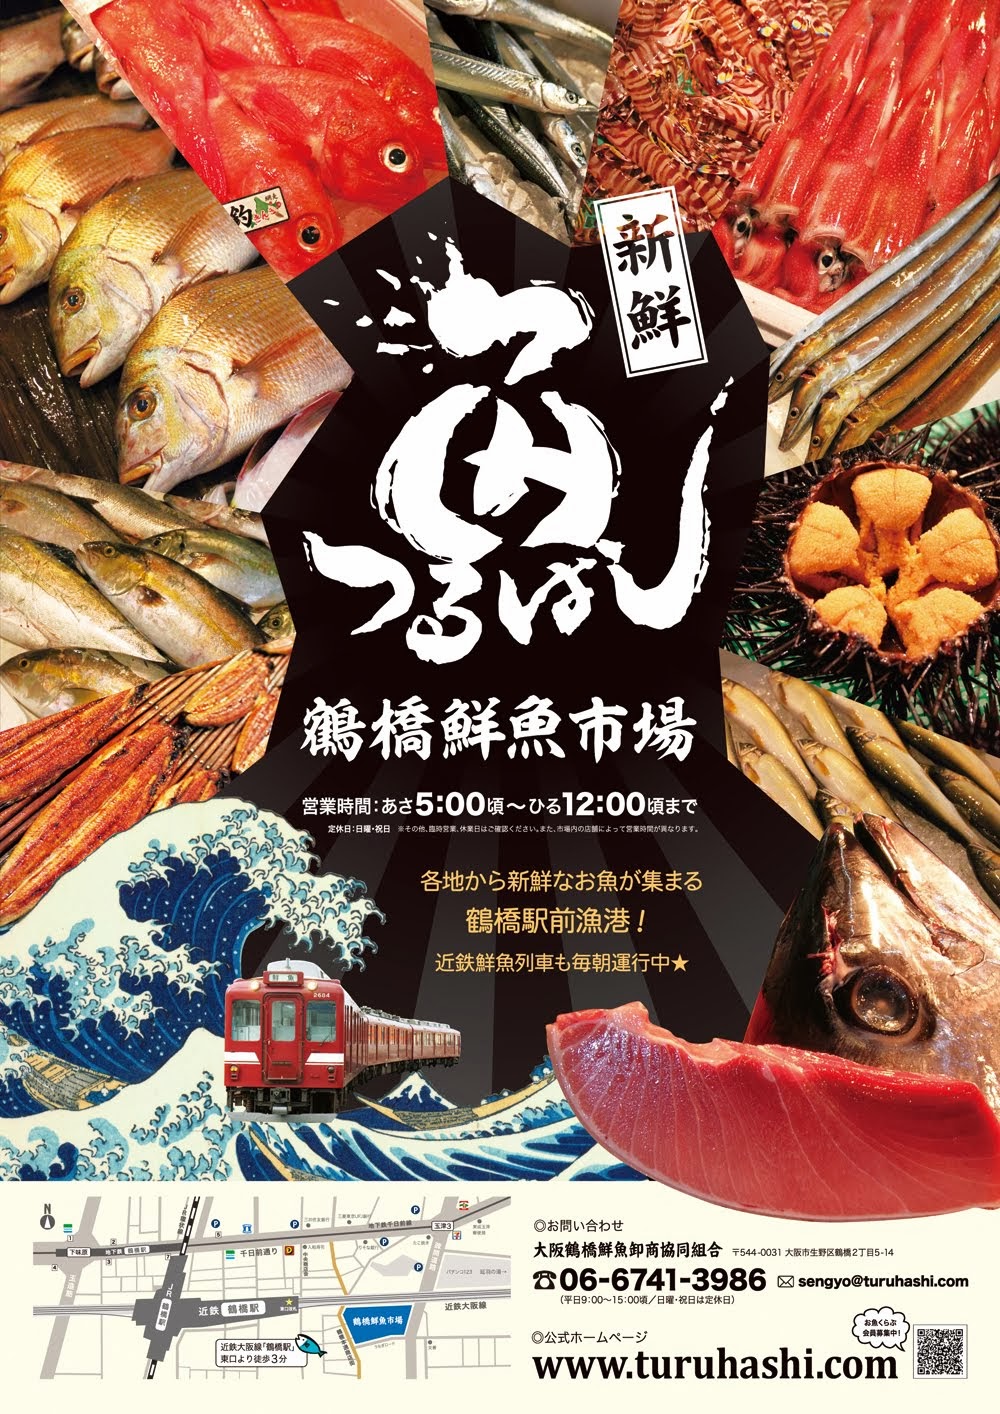 鶴橋鮮魚市場へいらっしゃい！